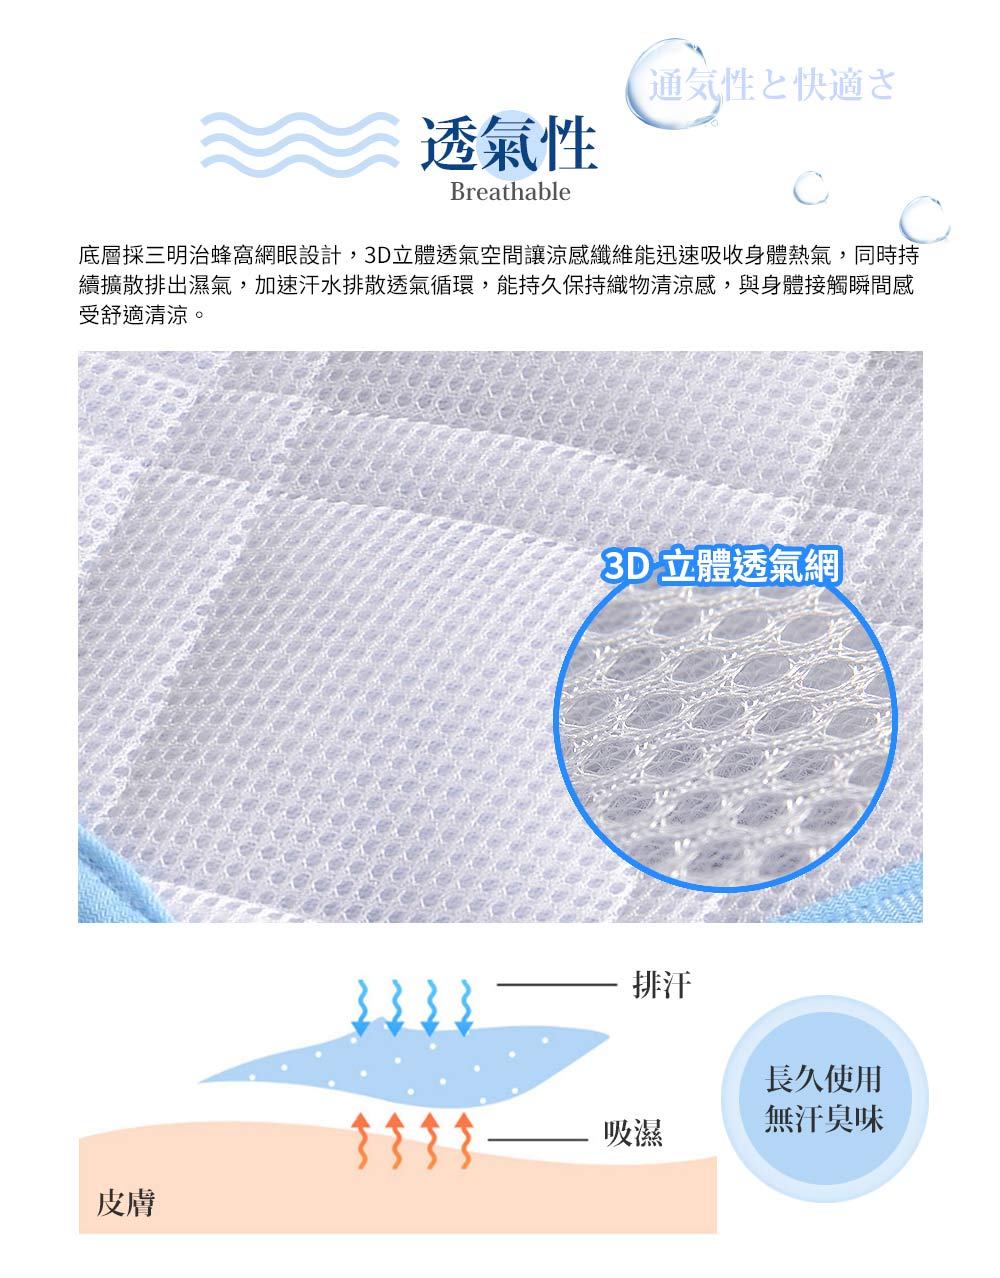 京都手祚 瞬涼5度科技冰絲保潔涼感墊1入 雙人/加大 藍/灰 買就送同色系素色枕